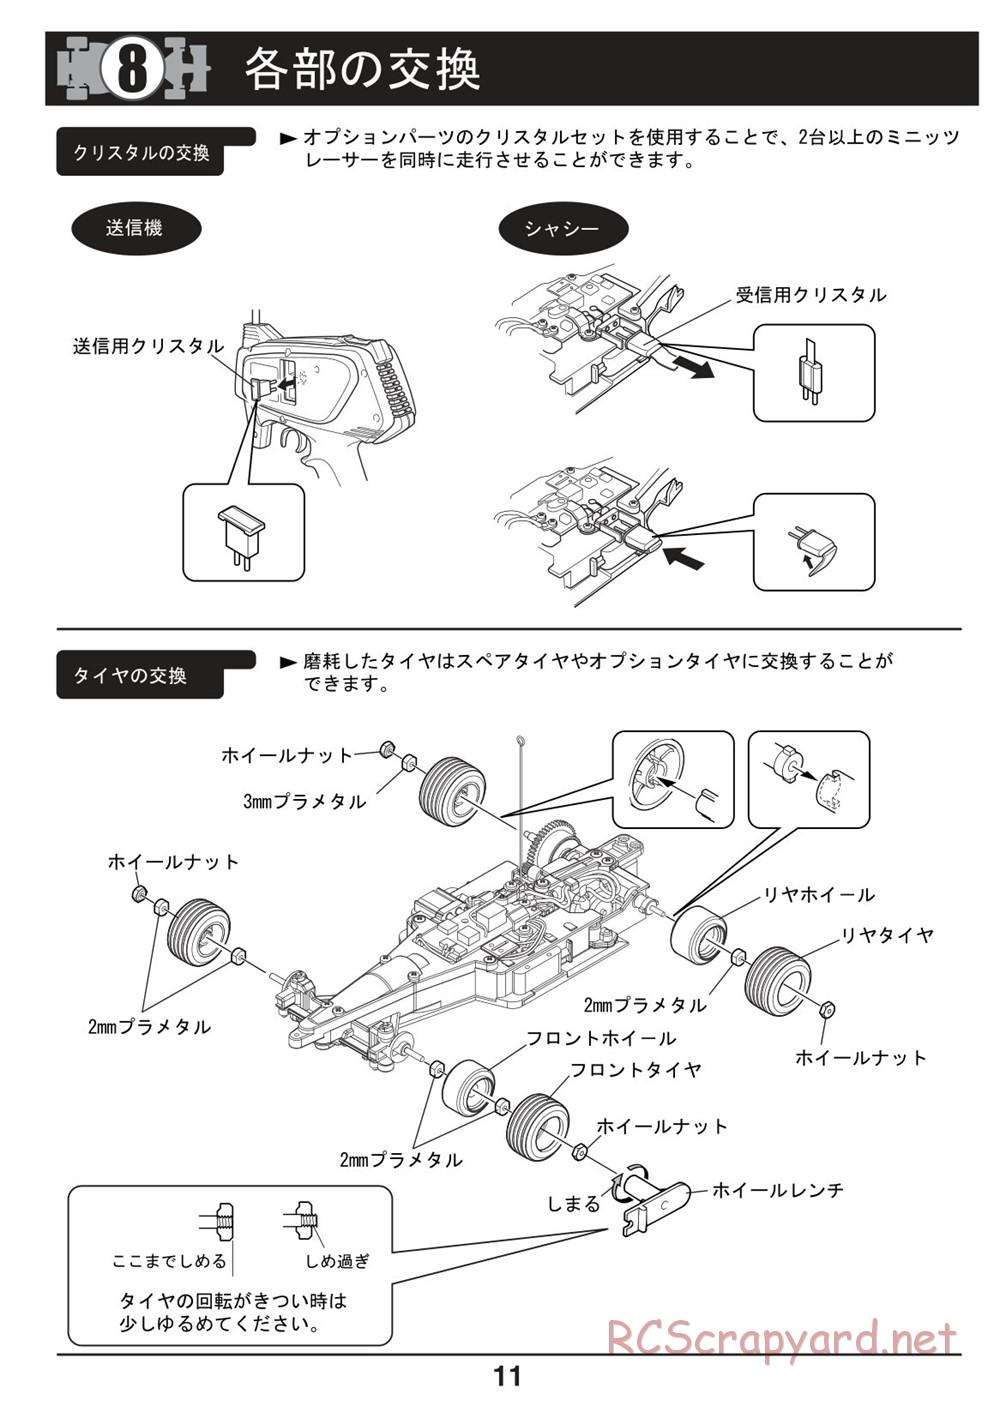 Kyosho - Mini-Z F1 - Manual - Page 11